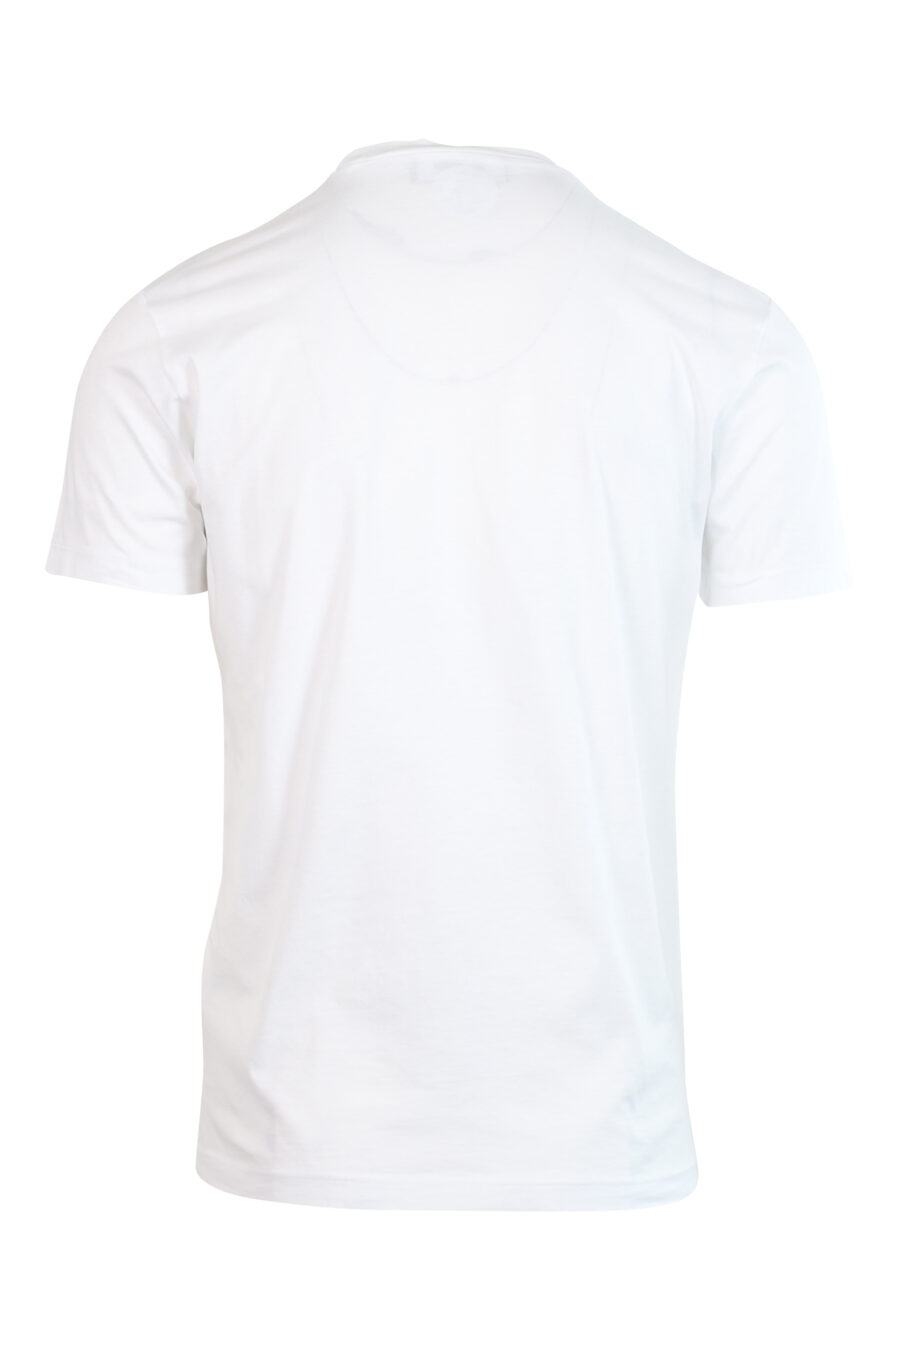 Camiseta blanca con maxilogo "icon" vertical - 8052134980989 2